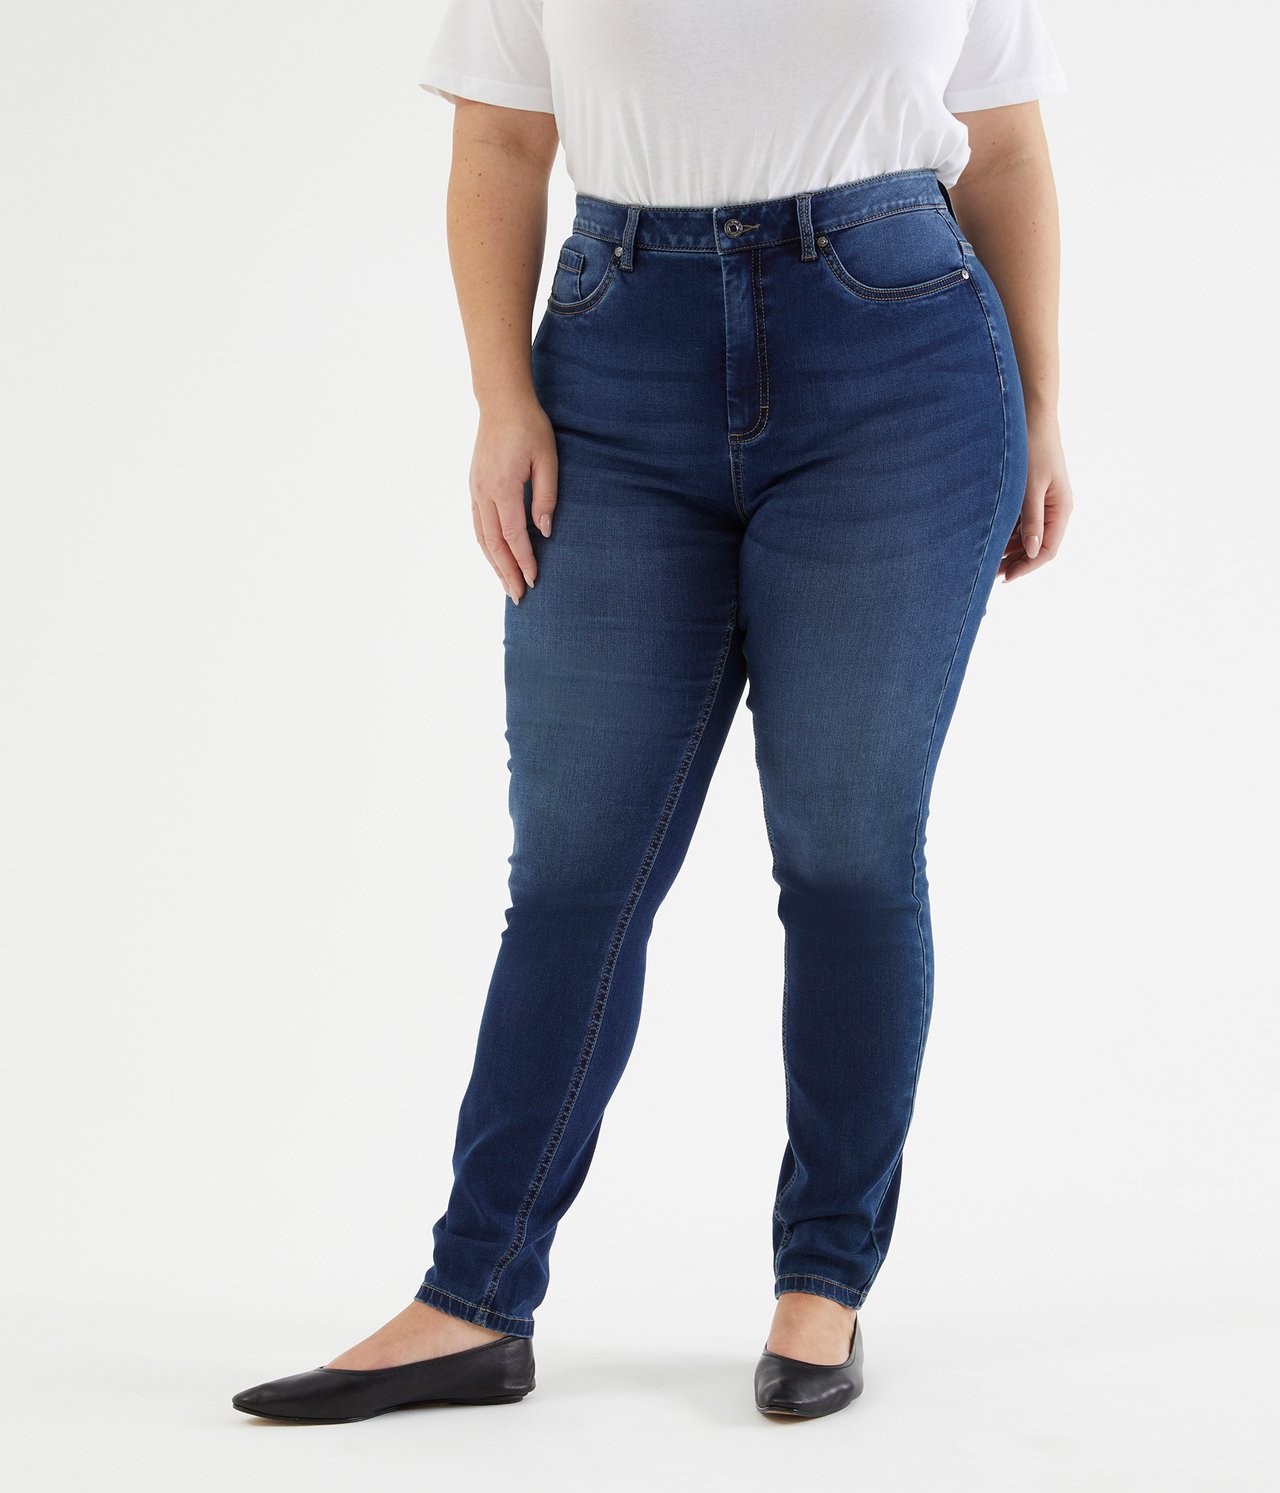 Ebba slim jeans extra long leg - Mørk denim - 3